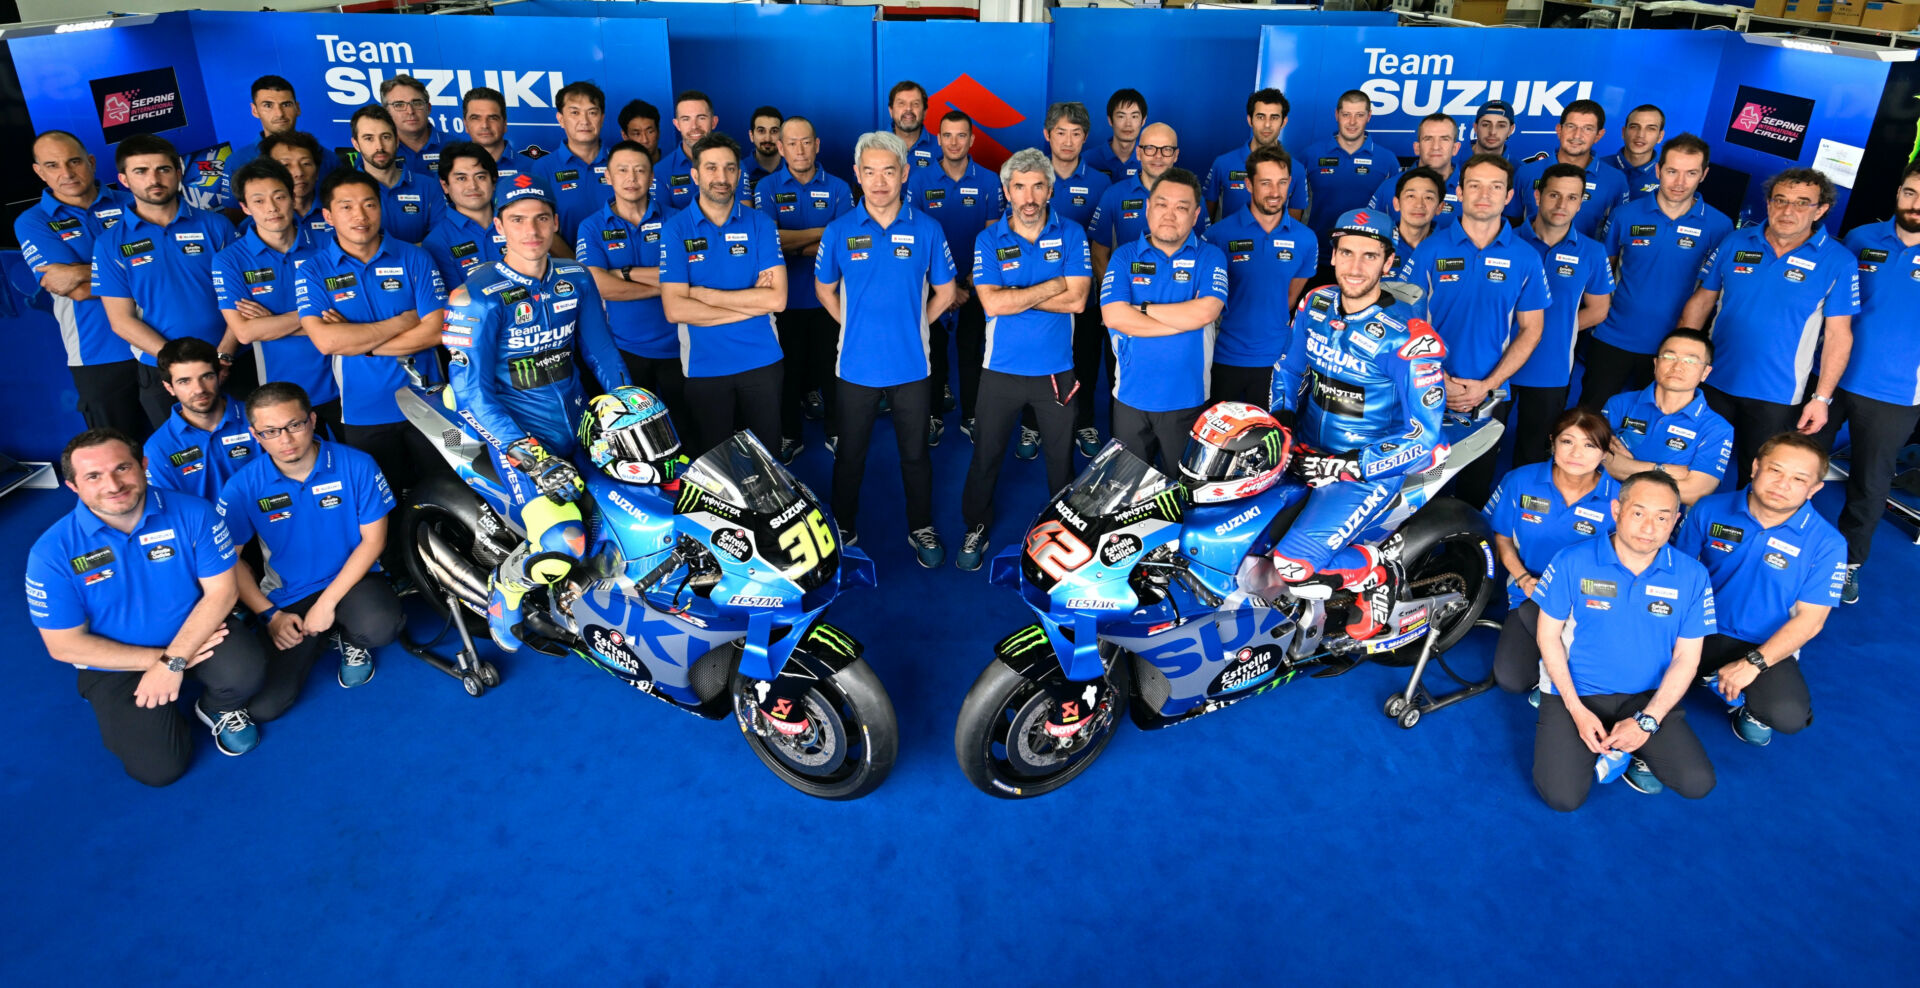 The Suzuki ECSTAR MotoGP team. Photo courtesy Team Suzuki Press Office.